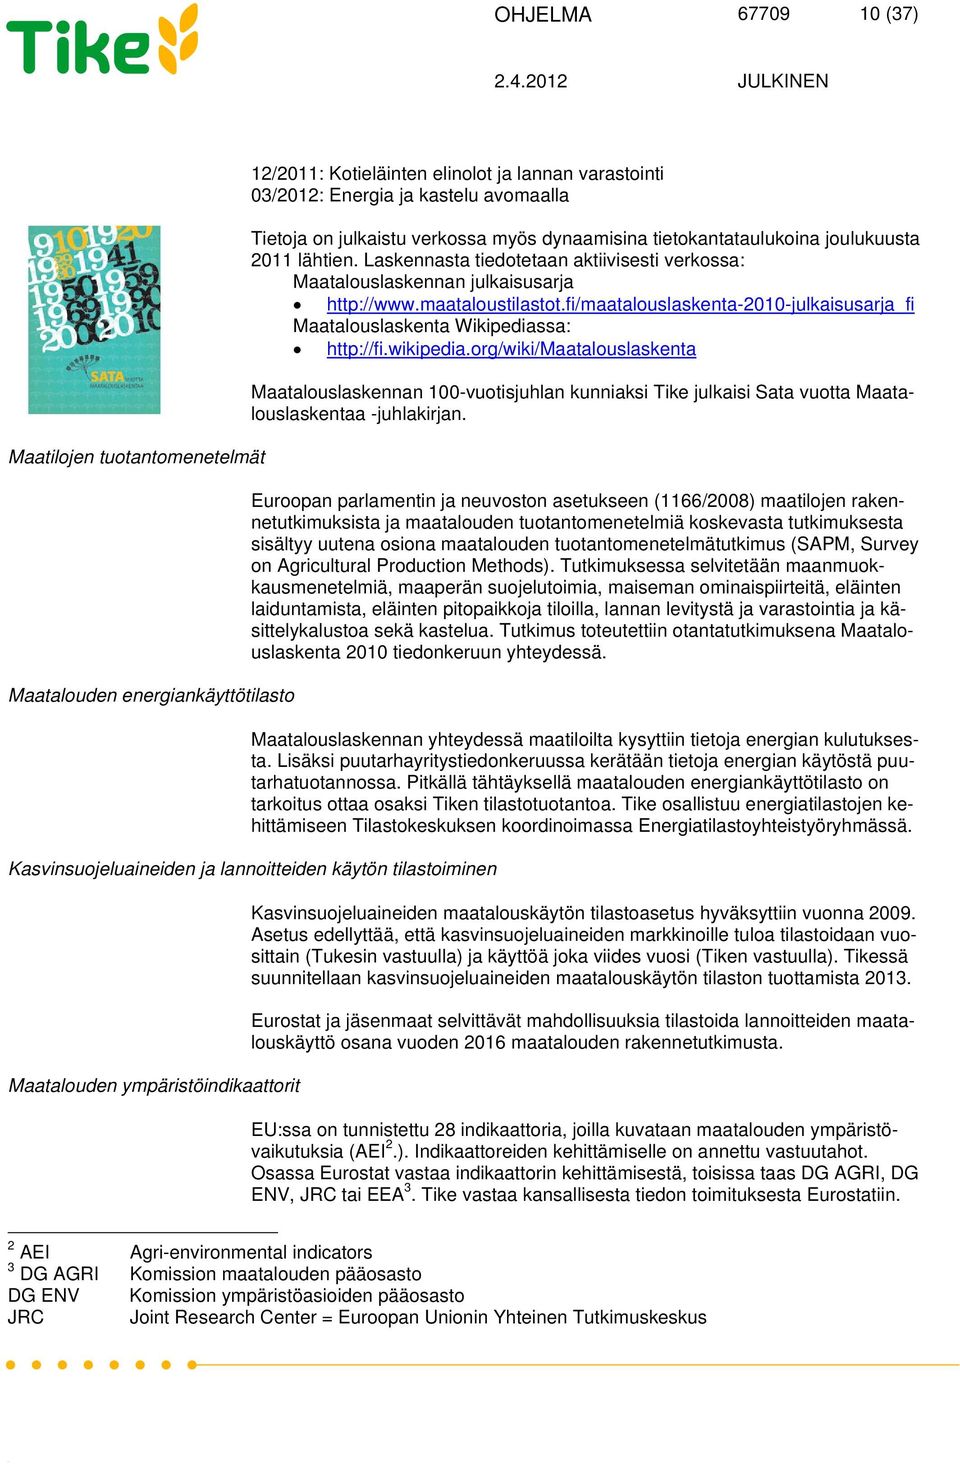 fi/maatalouslaskenta-2010-julkaisusarja_fi Maatalouslaskenta Wikipediassa: http://fi.wikipedia.